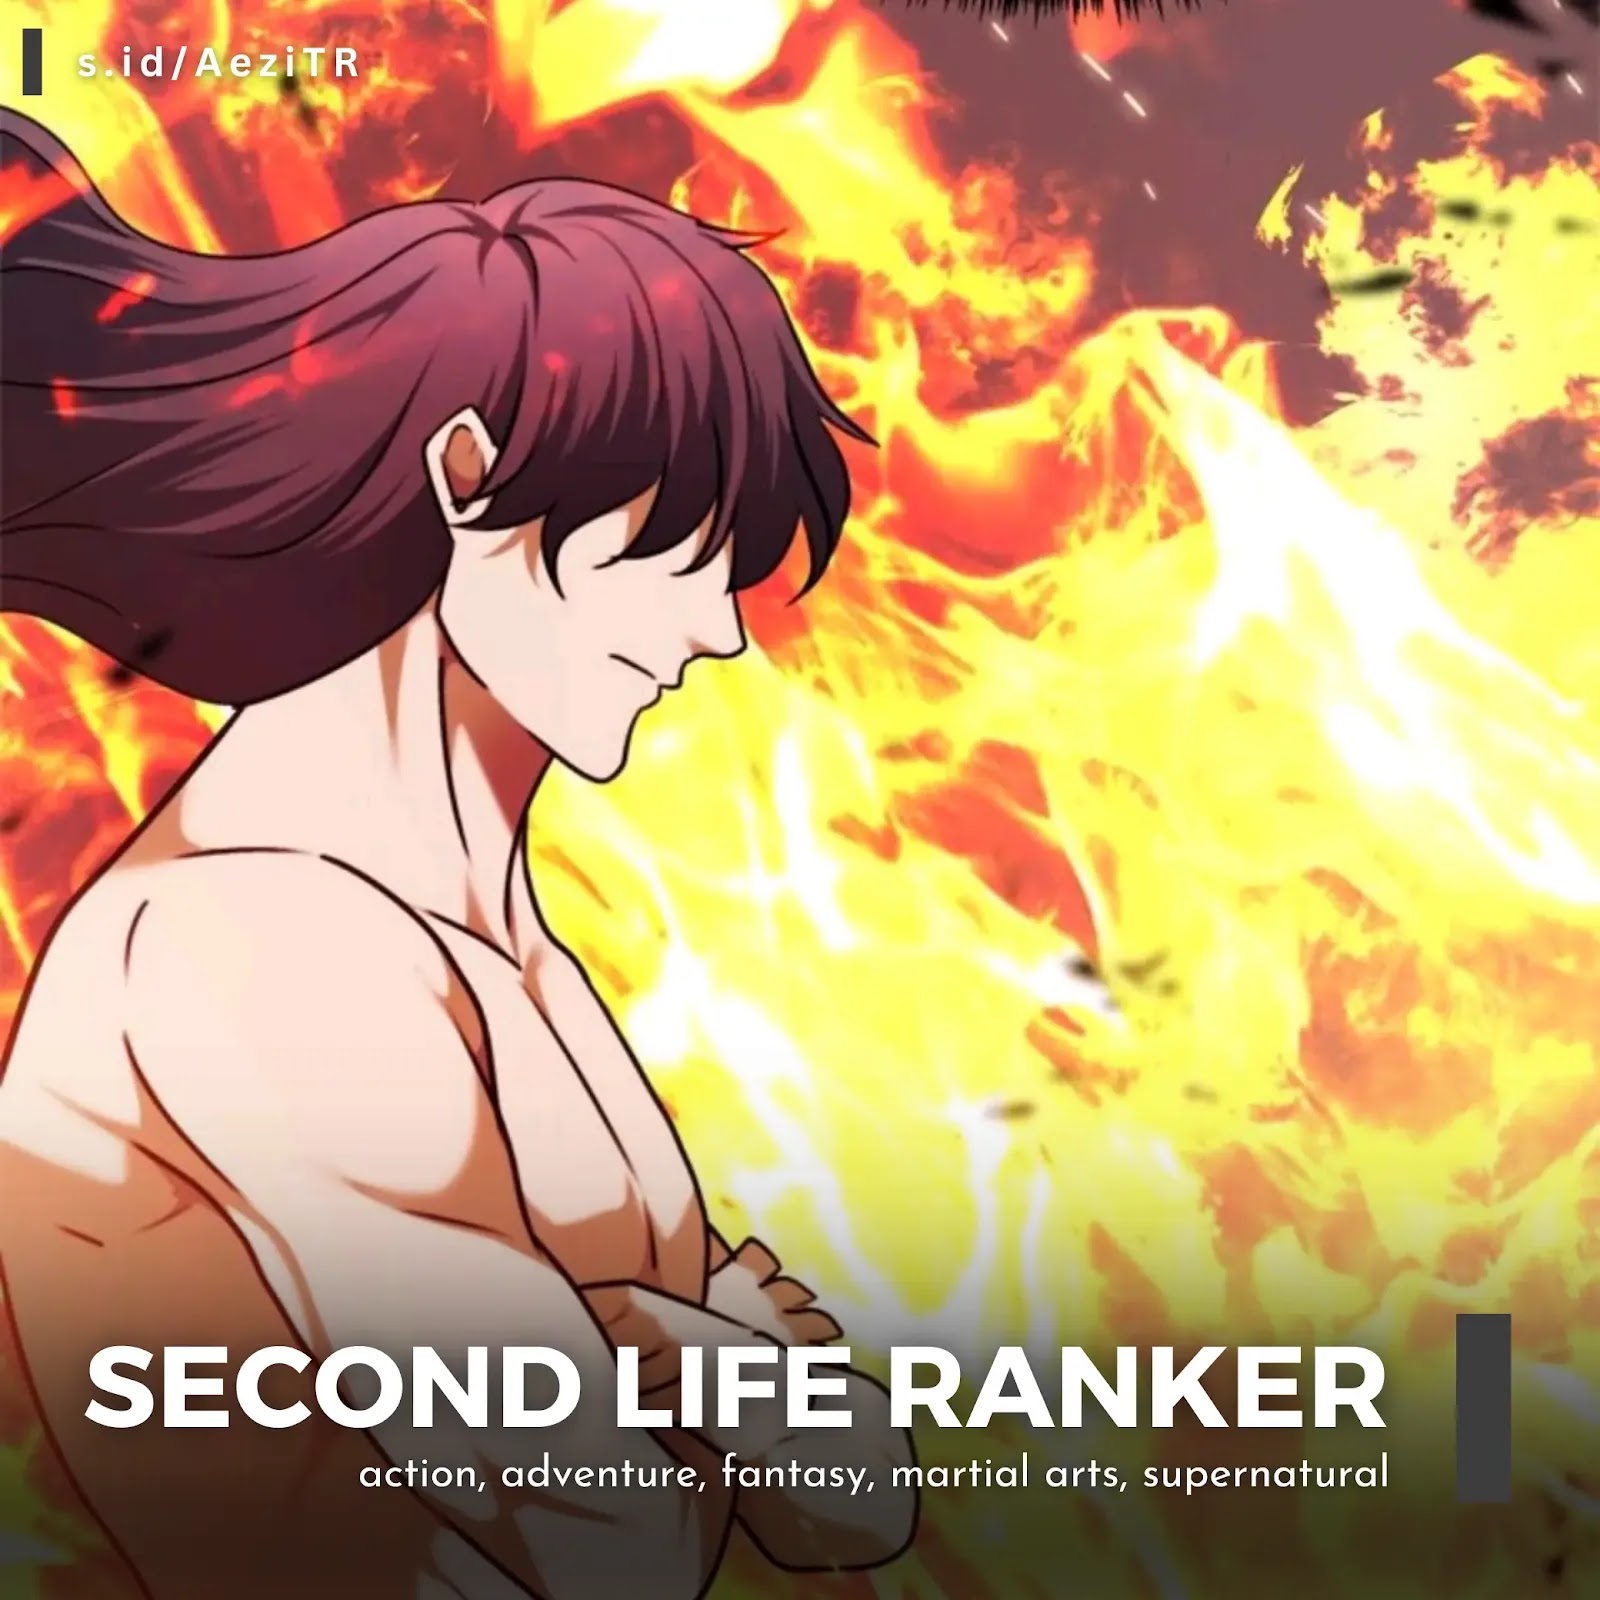 Review Second Life Ranker cover Rekomendasi Manhwa Terbaik Tahun 2019 by @aezife (s.id/AeziTR)